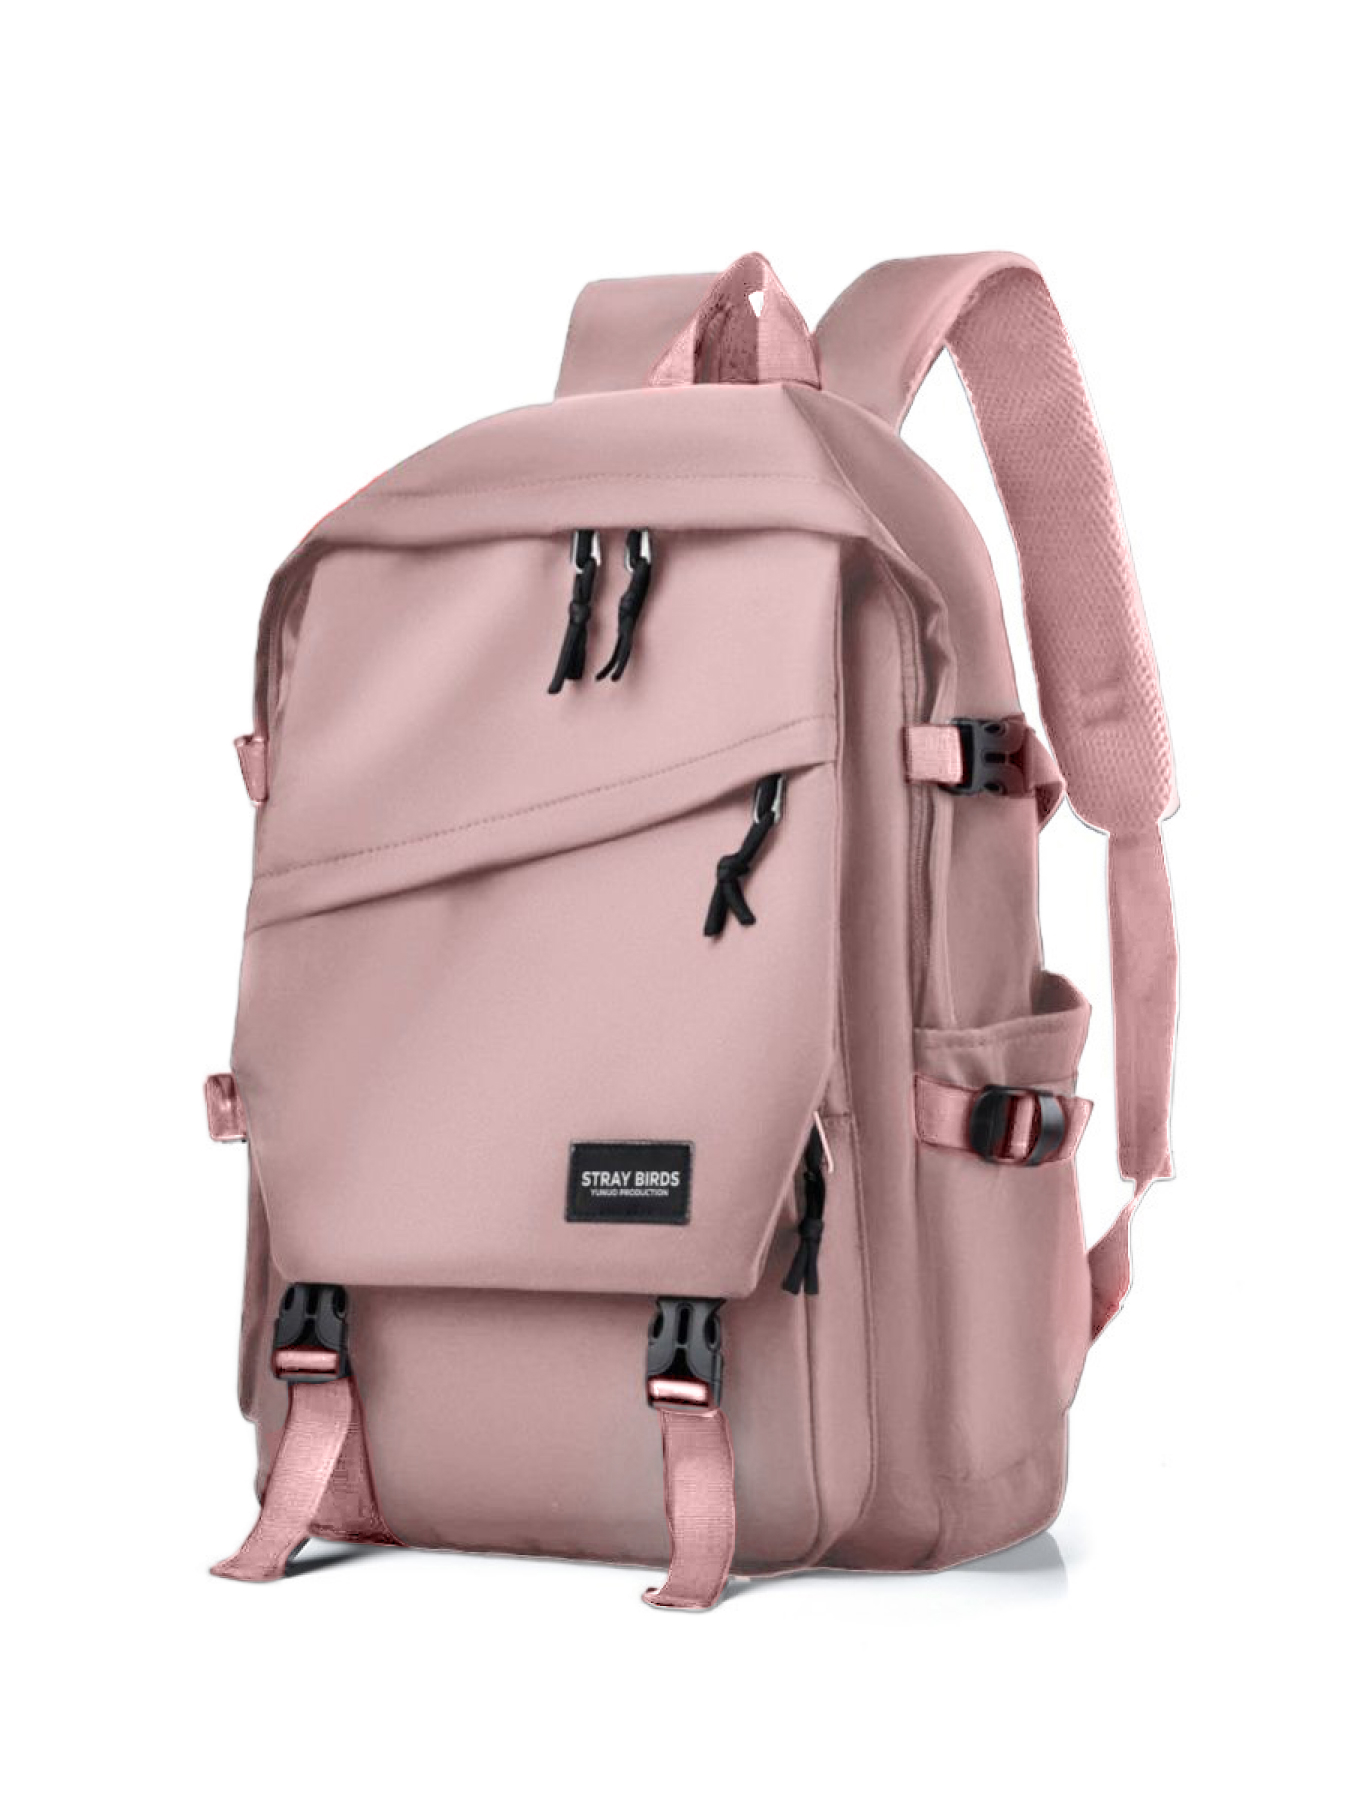 Рюкзак унисекс Luxman 2013 розовый, 44х20х34 см - купить в Luxman (со склада СберМегаМаркет), цена на Мегамаркет